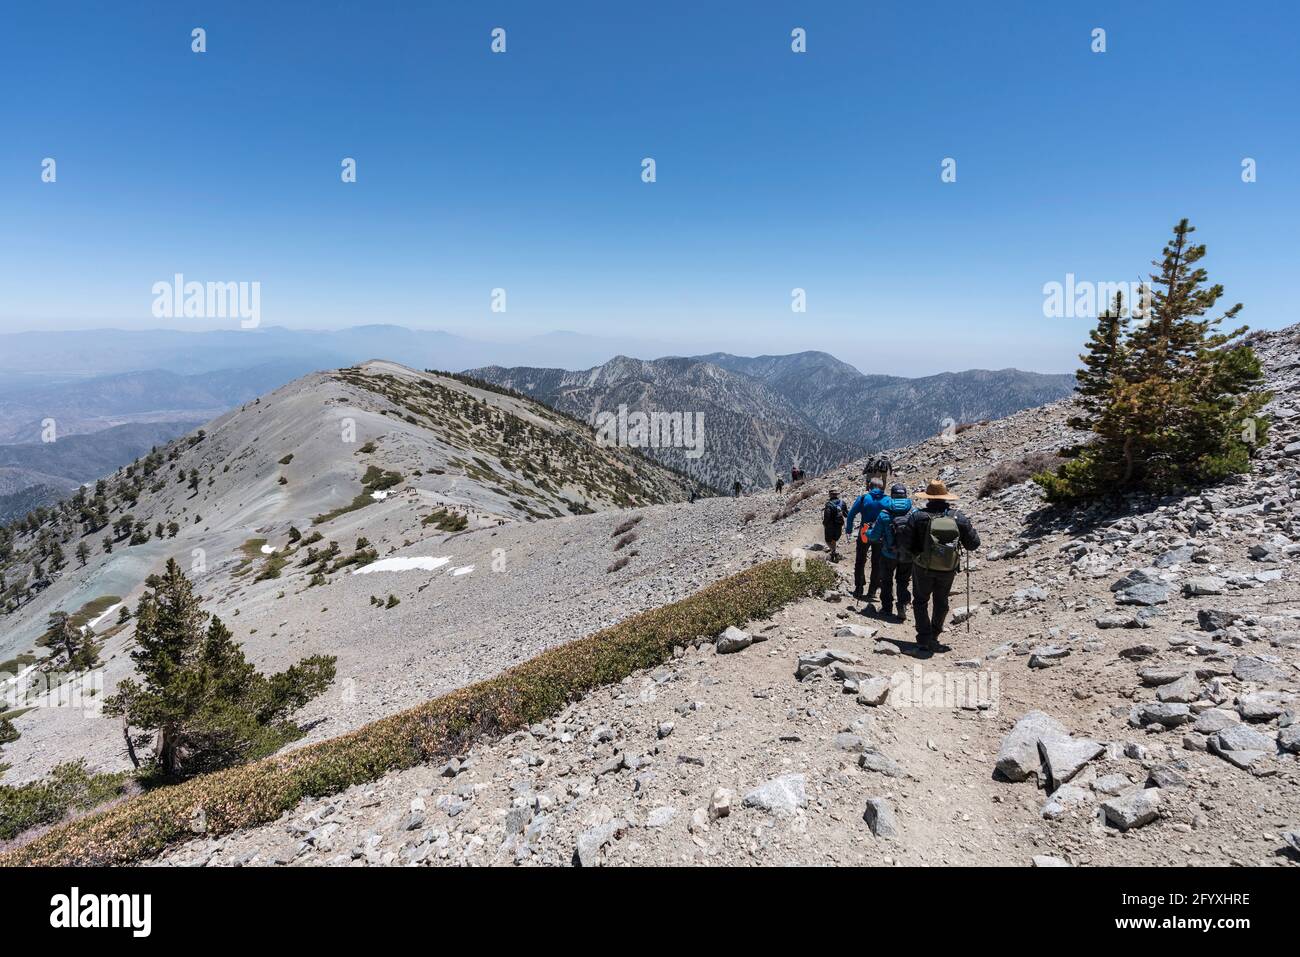 San Gabriel Mountains National Monument, California, USA - 23 maggio 2021: Escursionisti sulla famosa dorsale del Devils vicino alla cima del monte Baldy. Foto Stock